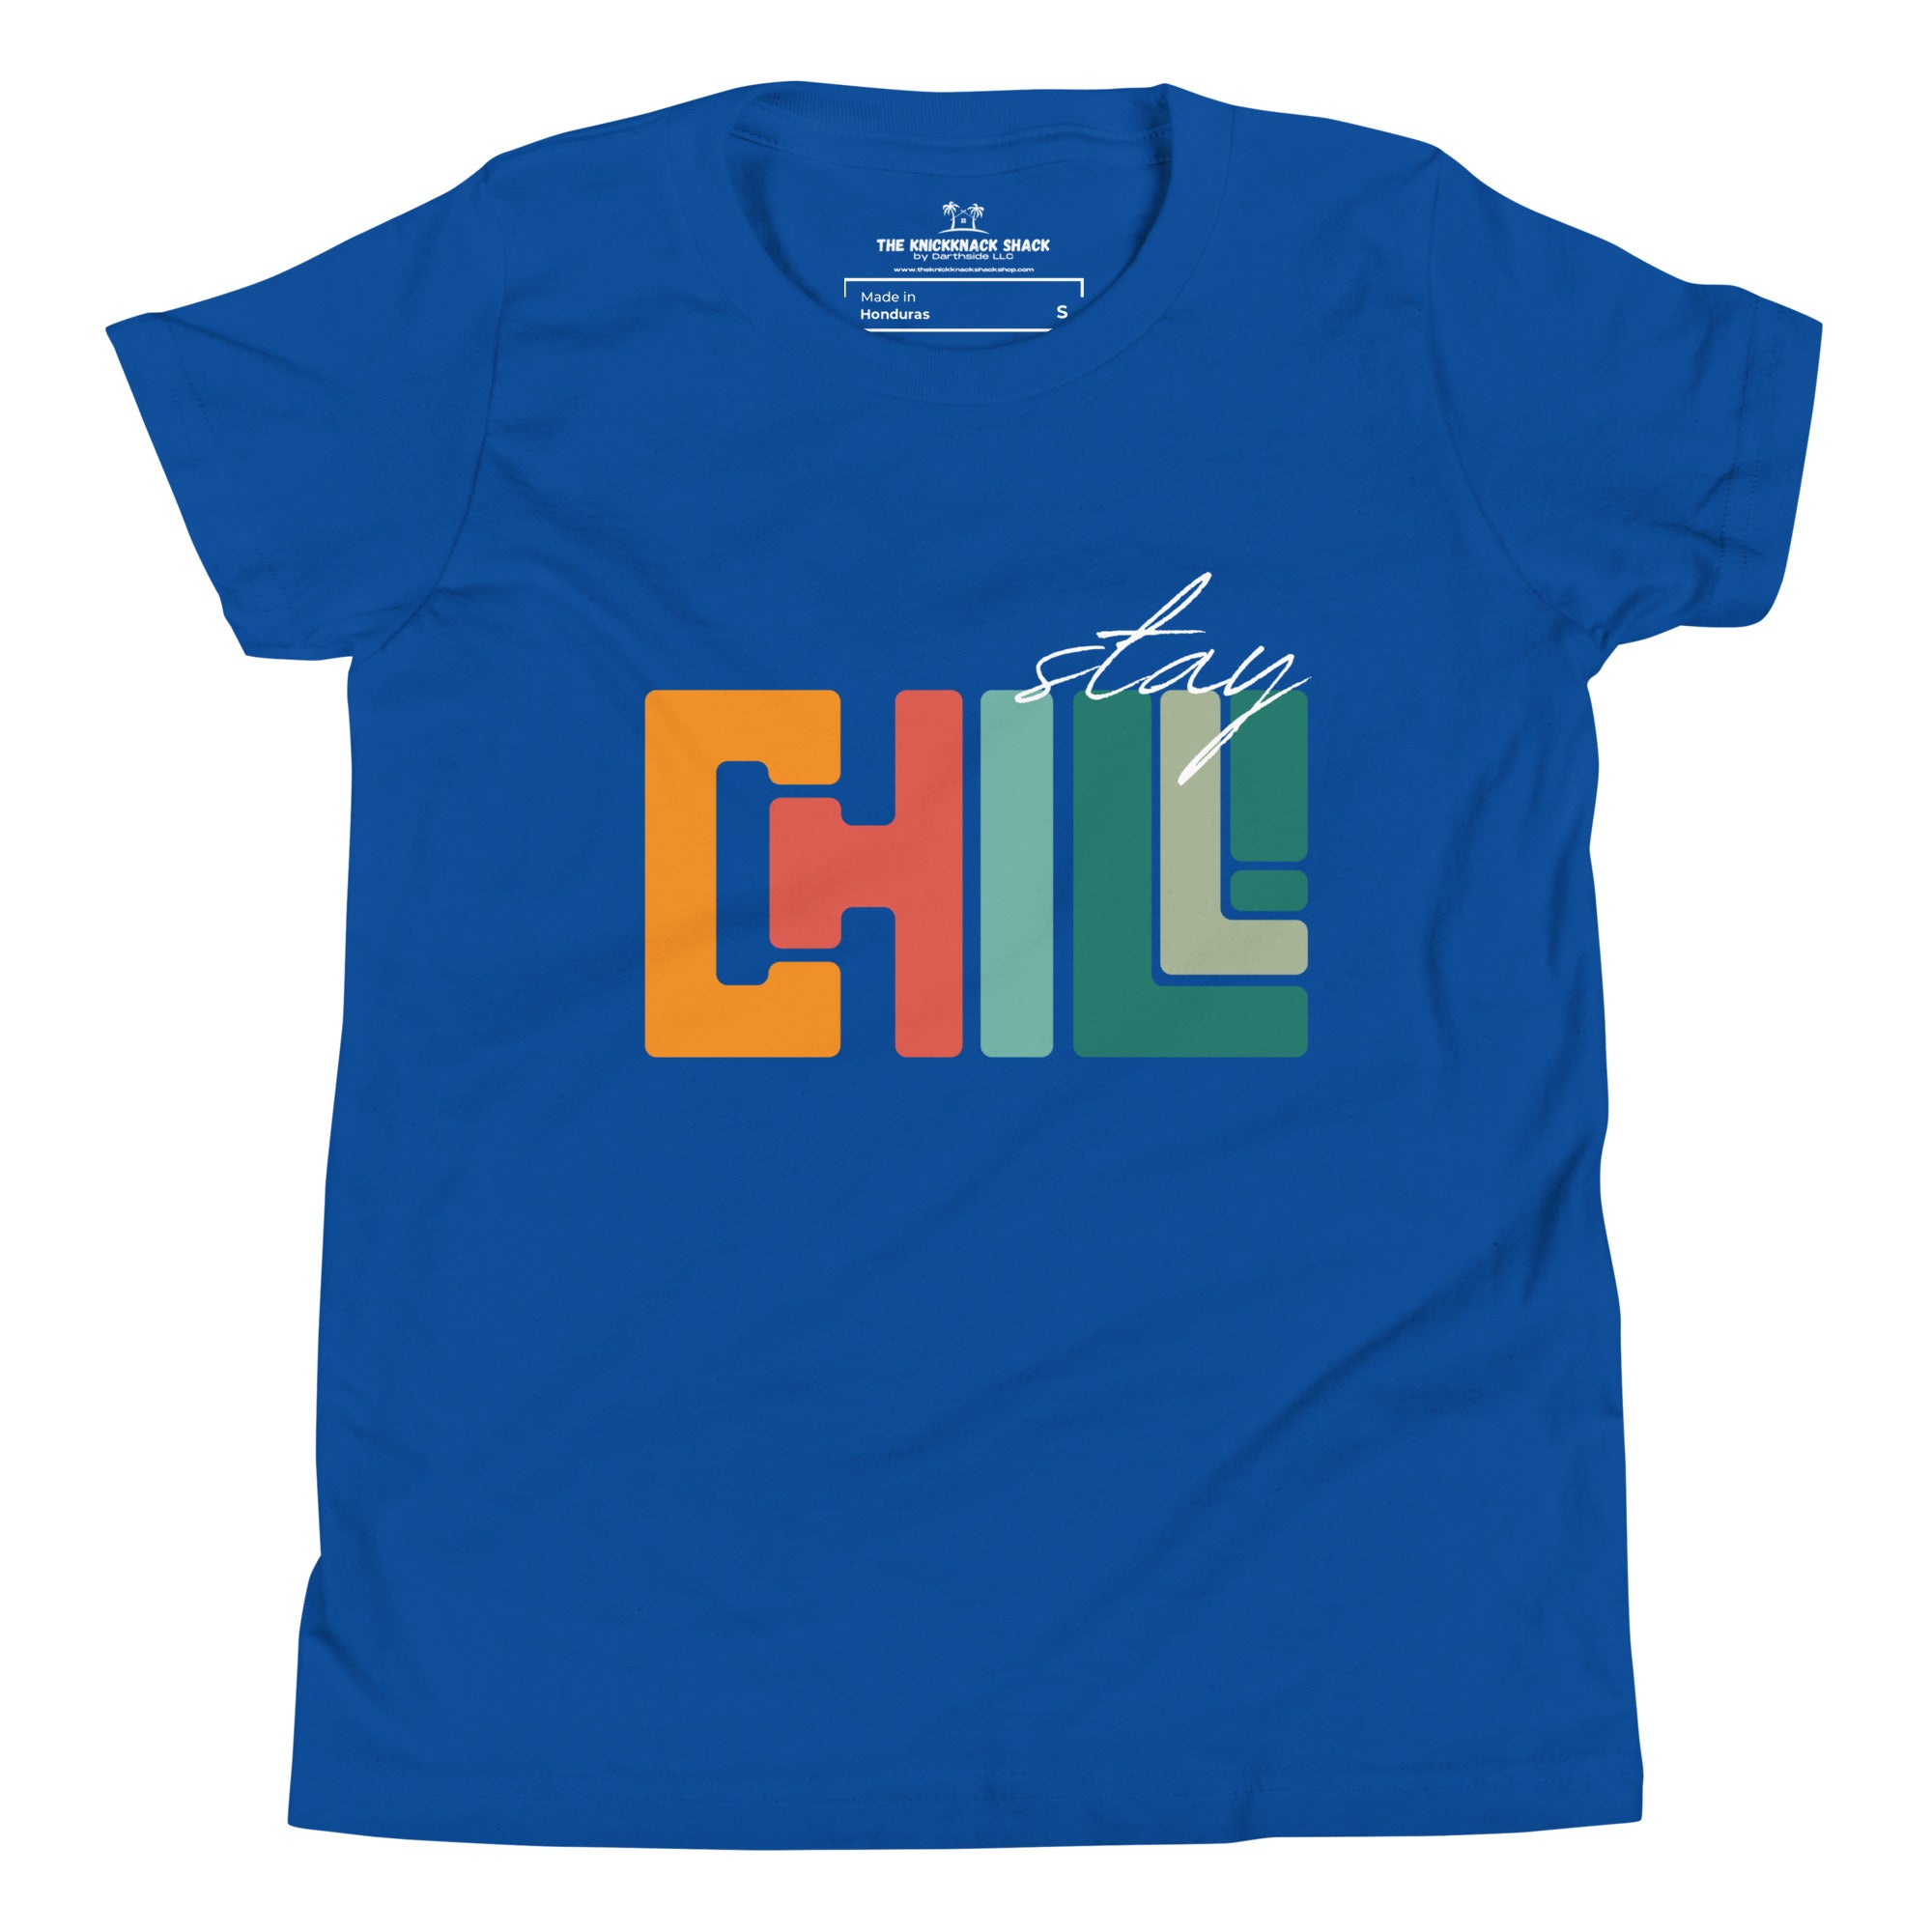 T-shirt jeunesse - Stay Chill (couleurs foncées)